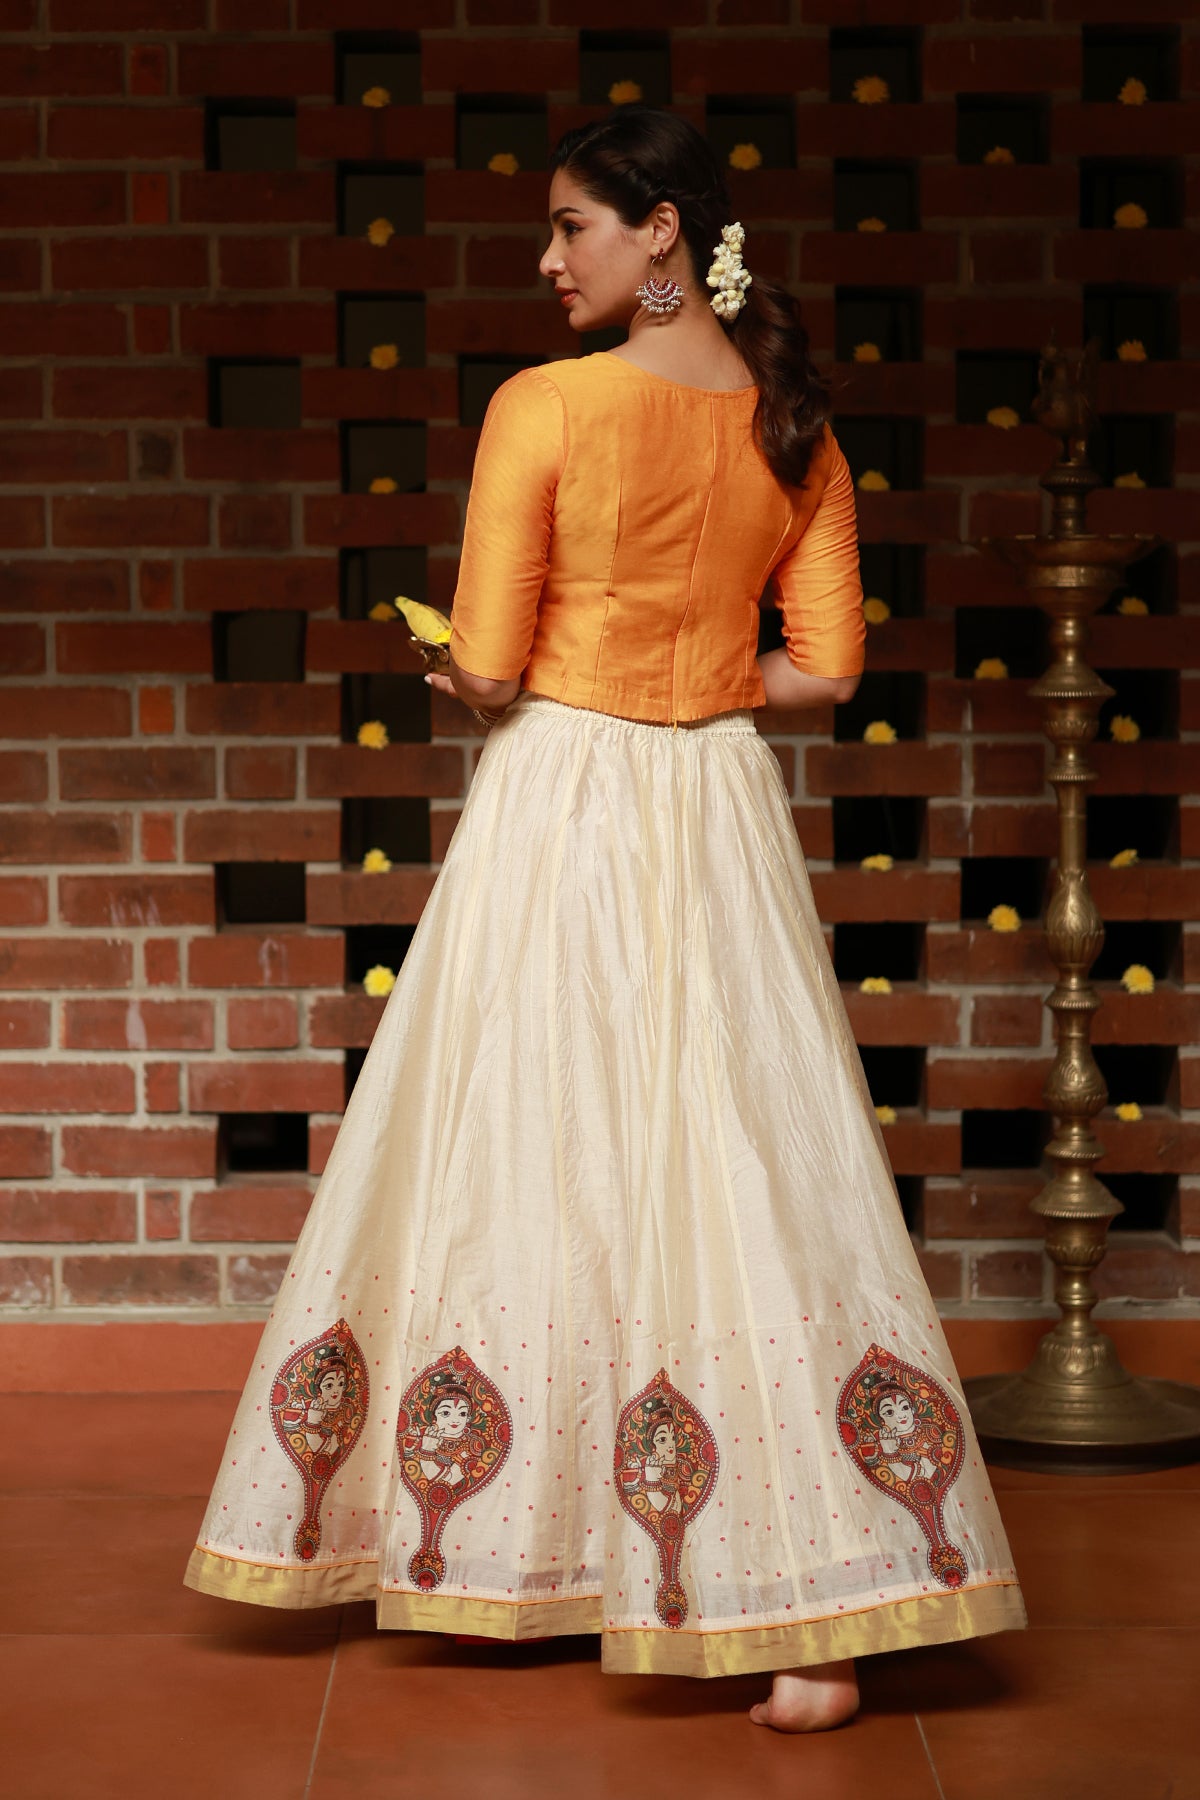 Valkannadi Printed Skirtset with Krishna Peedam Printed Top - Mustard & Off-White